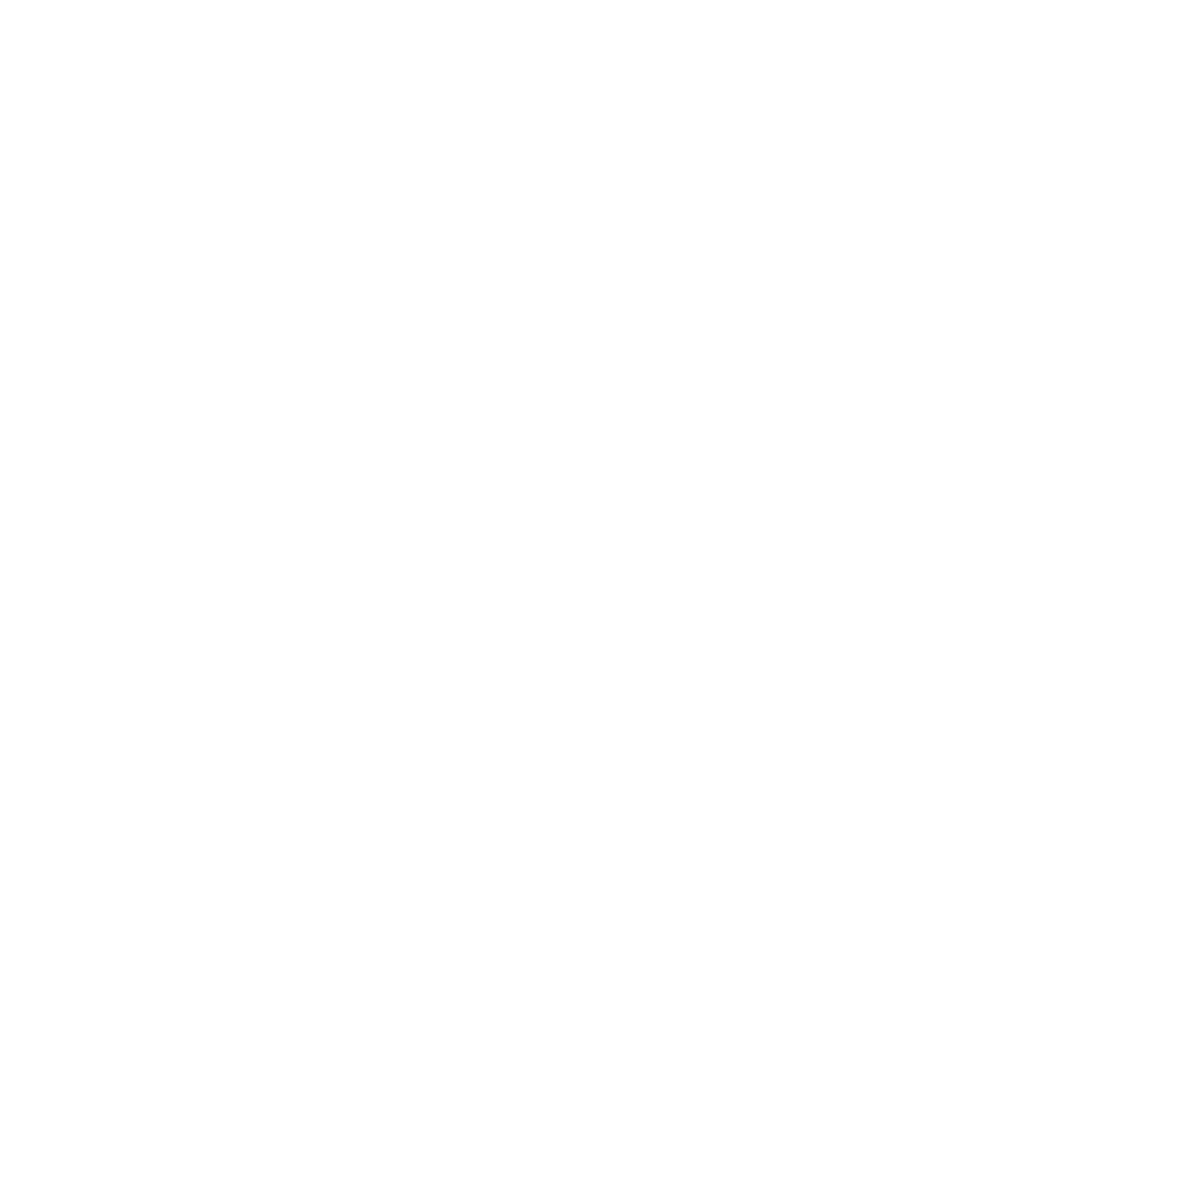 Clonable logo with slogan dark background